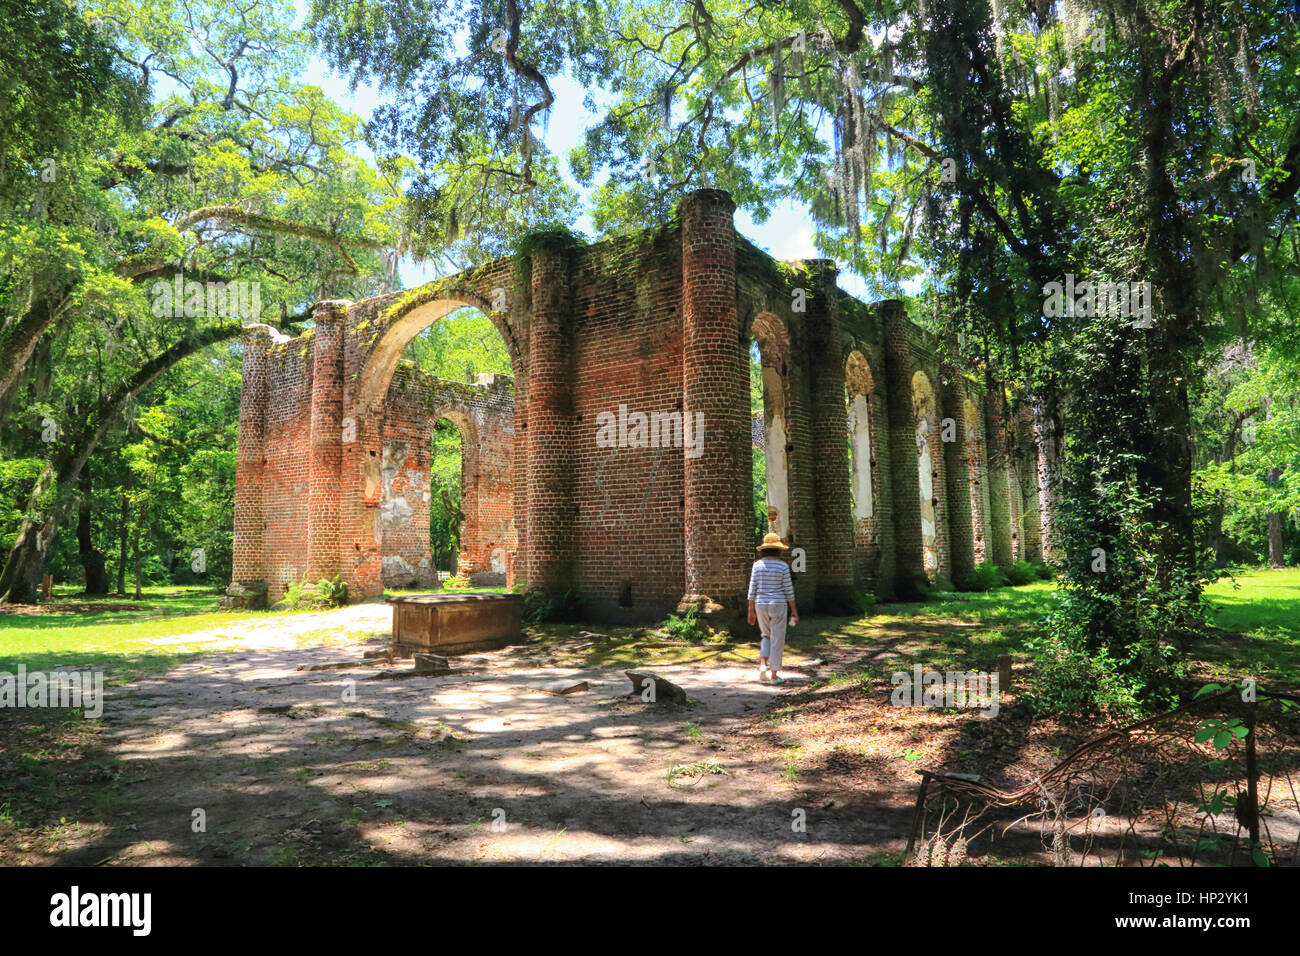 Las ruinas de la Iglesia de Sheldon en Yemassee, Carolina del Sur están enmarcados por robles y musgo español en este paisaje foto. Las ruinas son espectaculares. Foto de stock